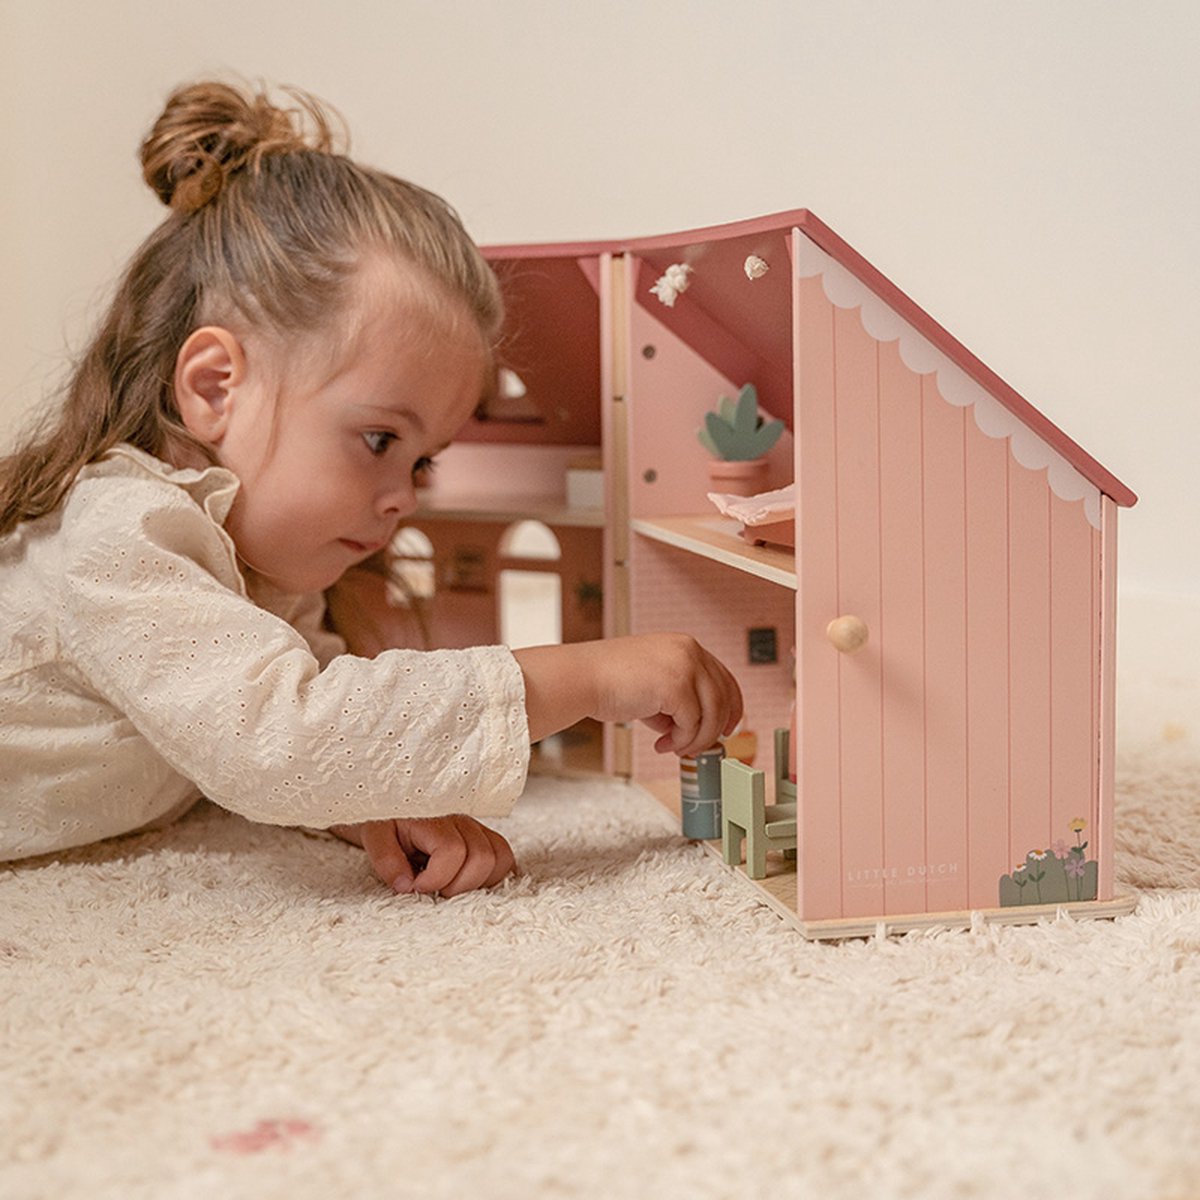 Little Dutch: przenośny domek dla lalek Small Doll's House